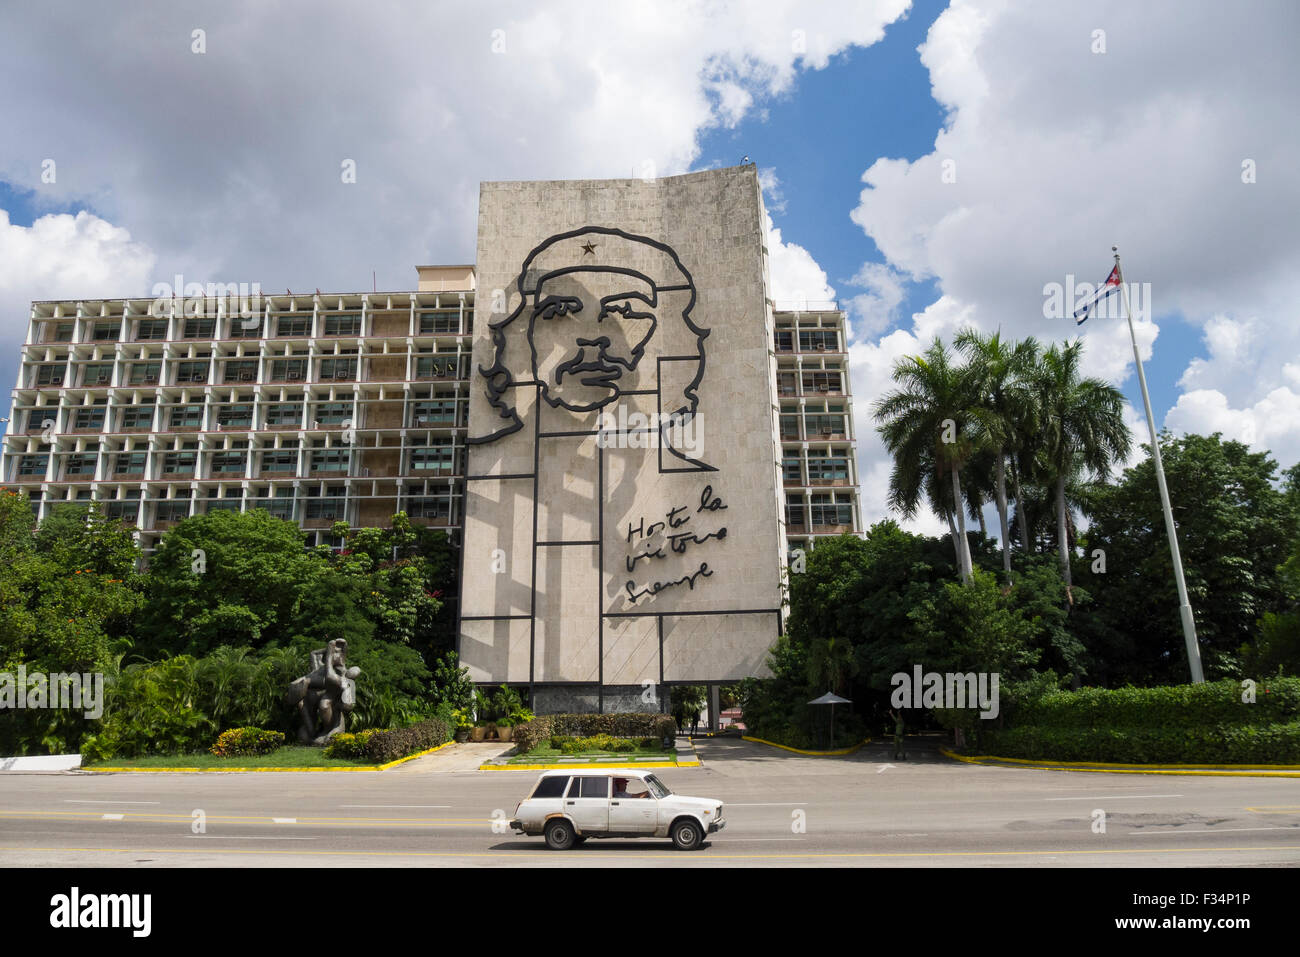 Un sovietico-realizzato Lada passa l'immagine scolpita di Che Guevara sul ministero dell'interno edificio in Havana Cuba. Foto Stock